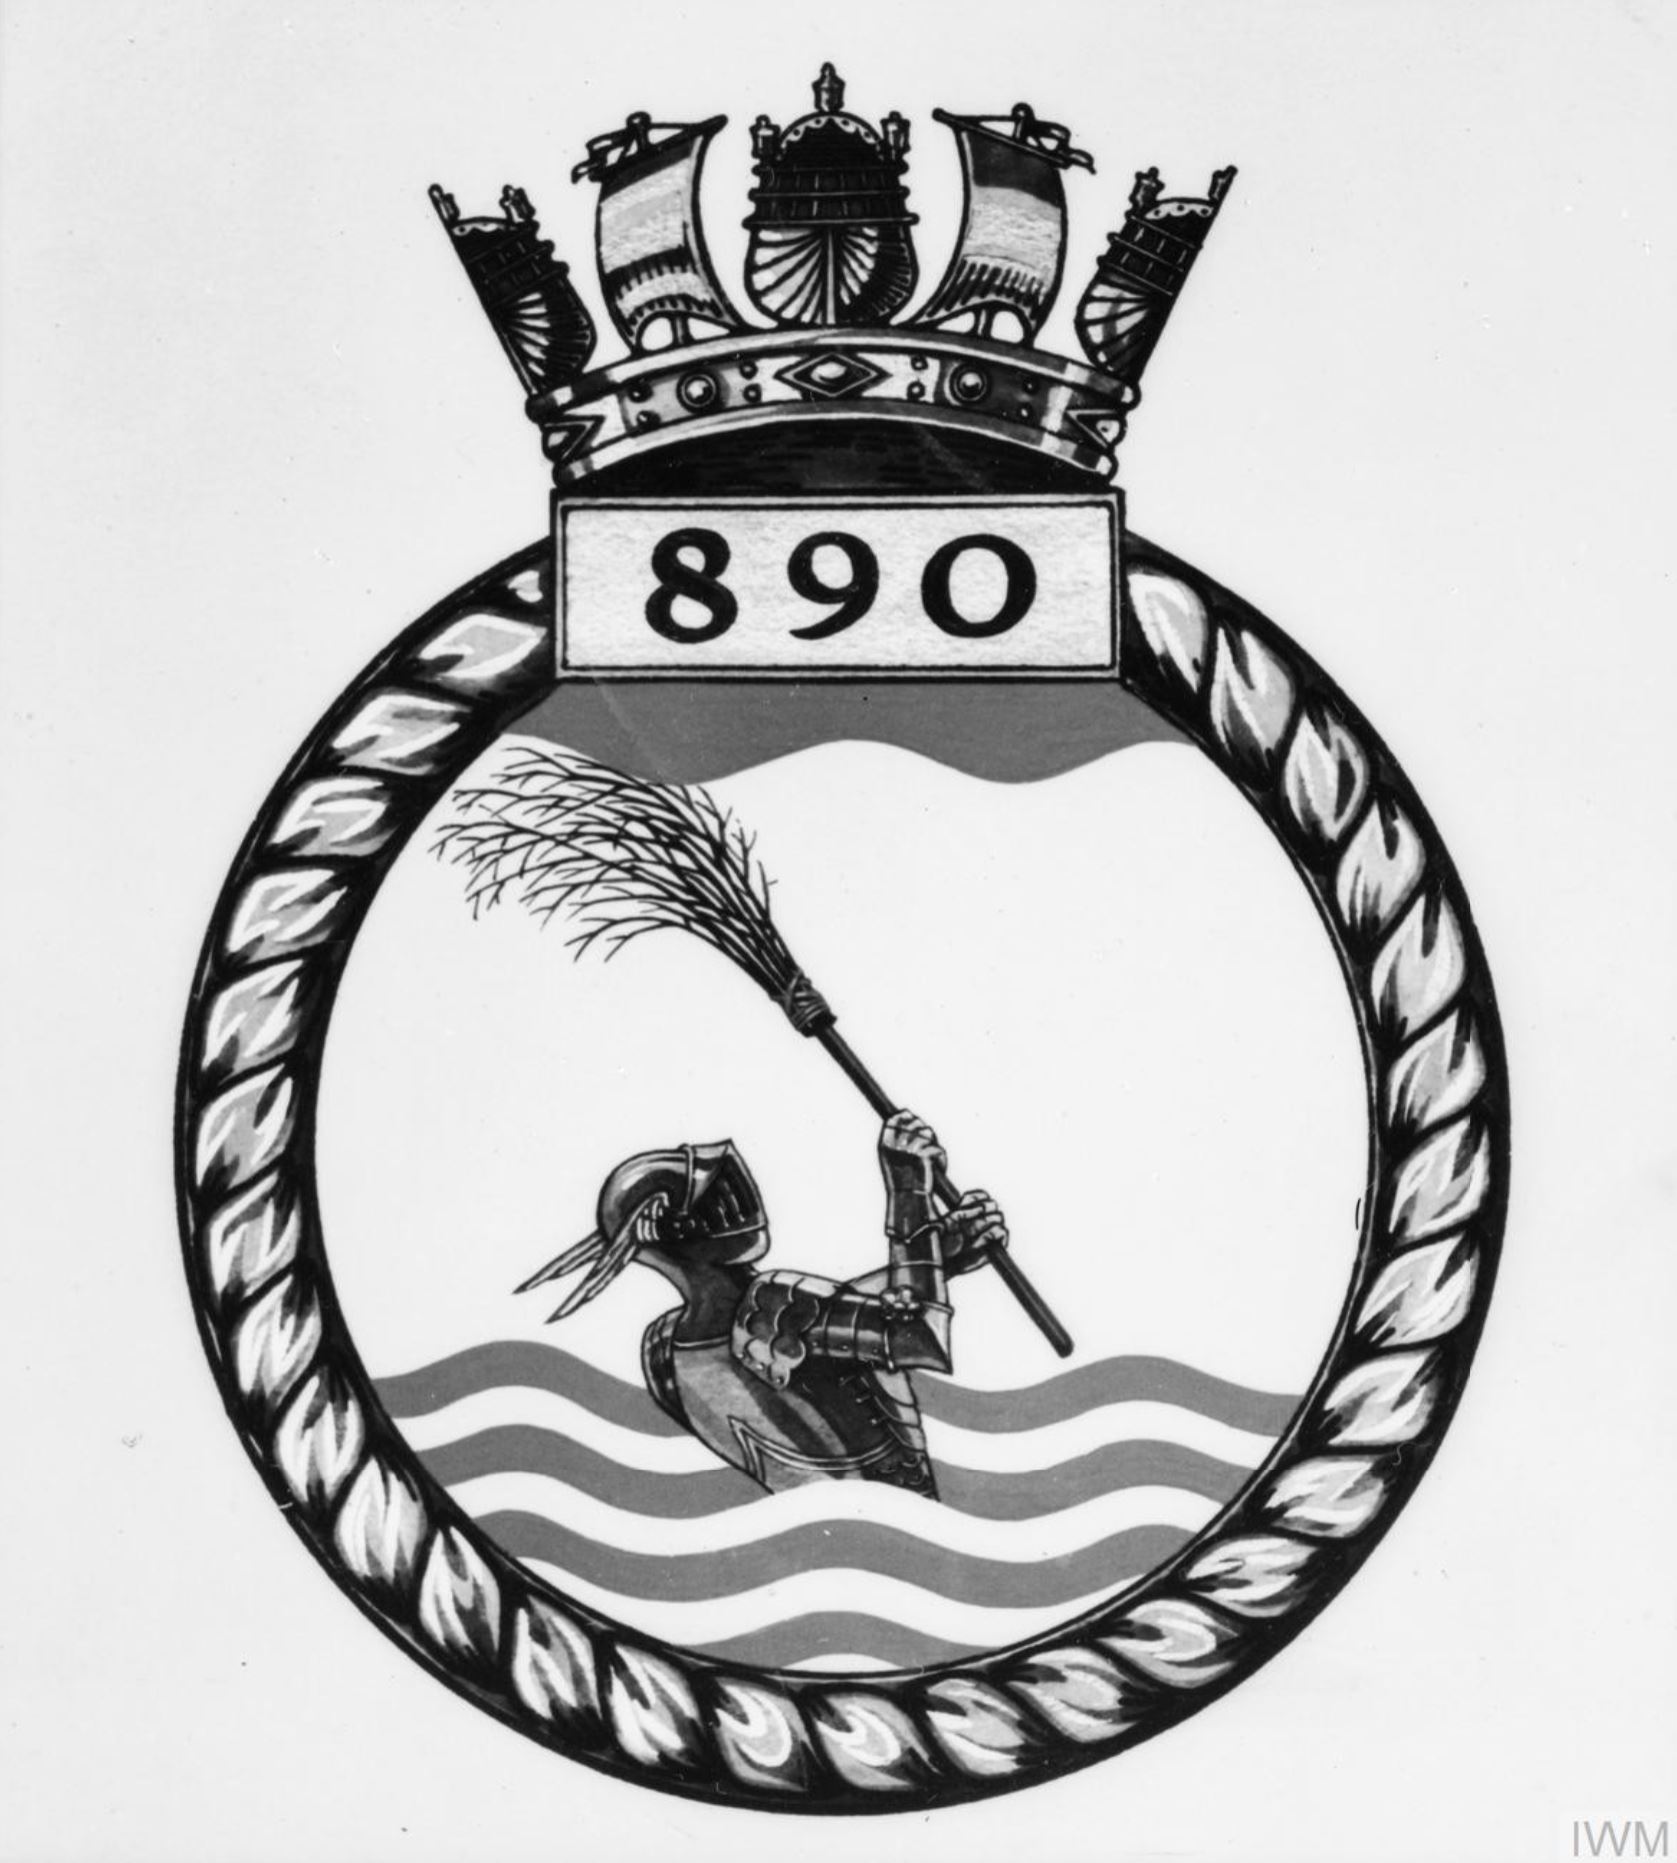 Fleet Air Arm crest of 890 Squadron IWM A26792